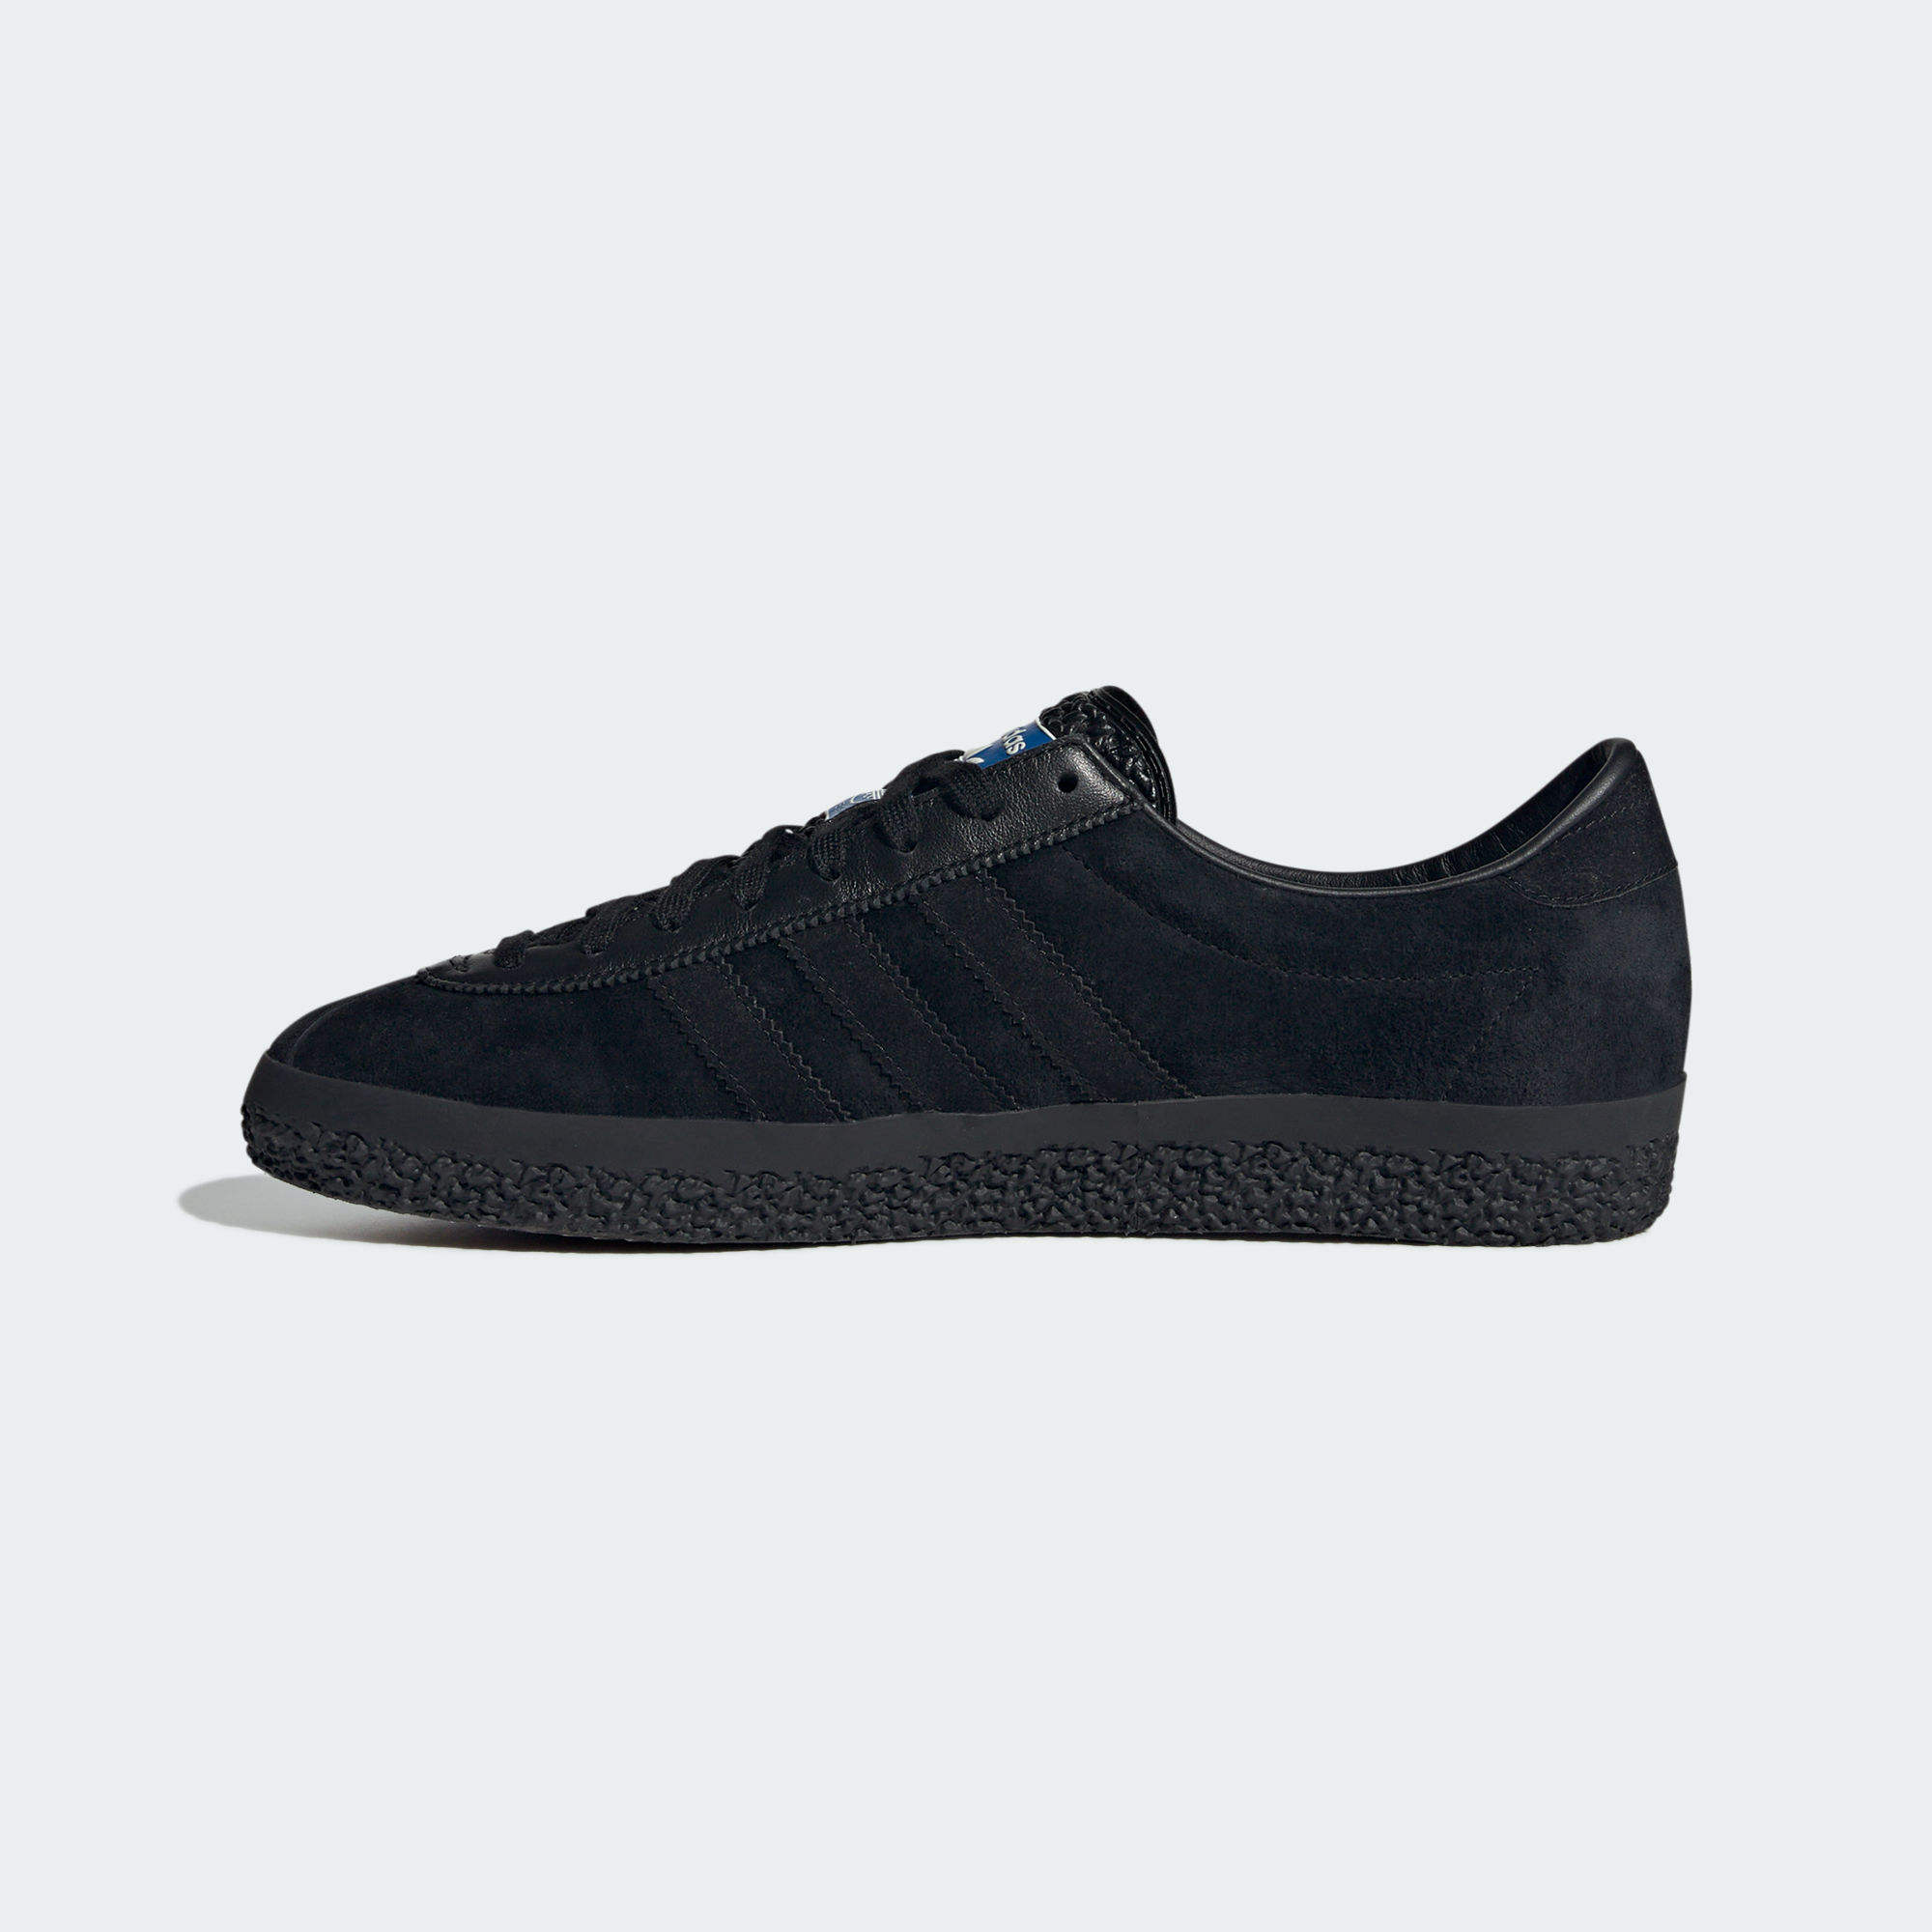 GAZELLE SPZL 運動鞋- 黑色| 女子,男子| adidas(愛迪達)香港官方網上商店